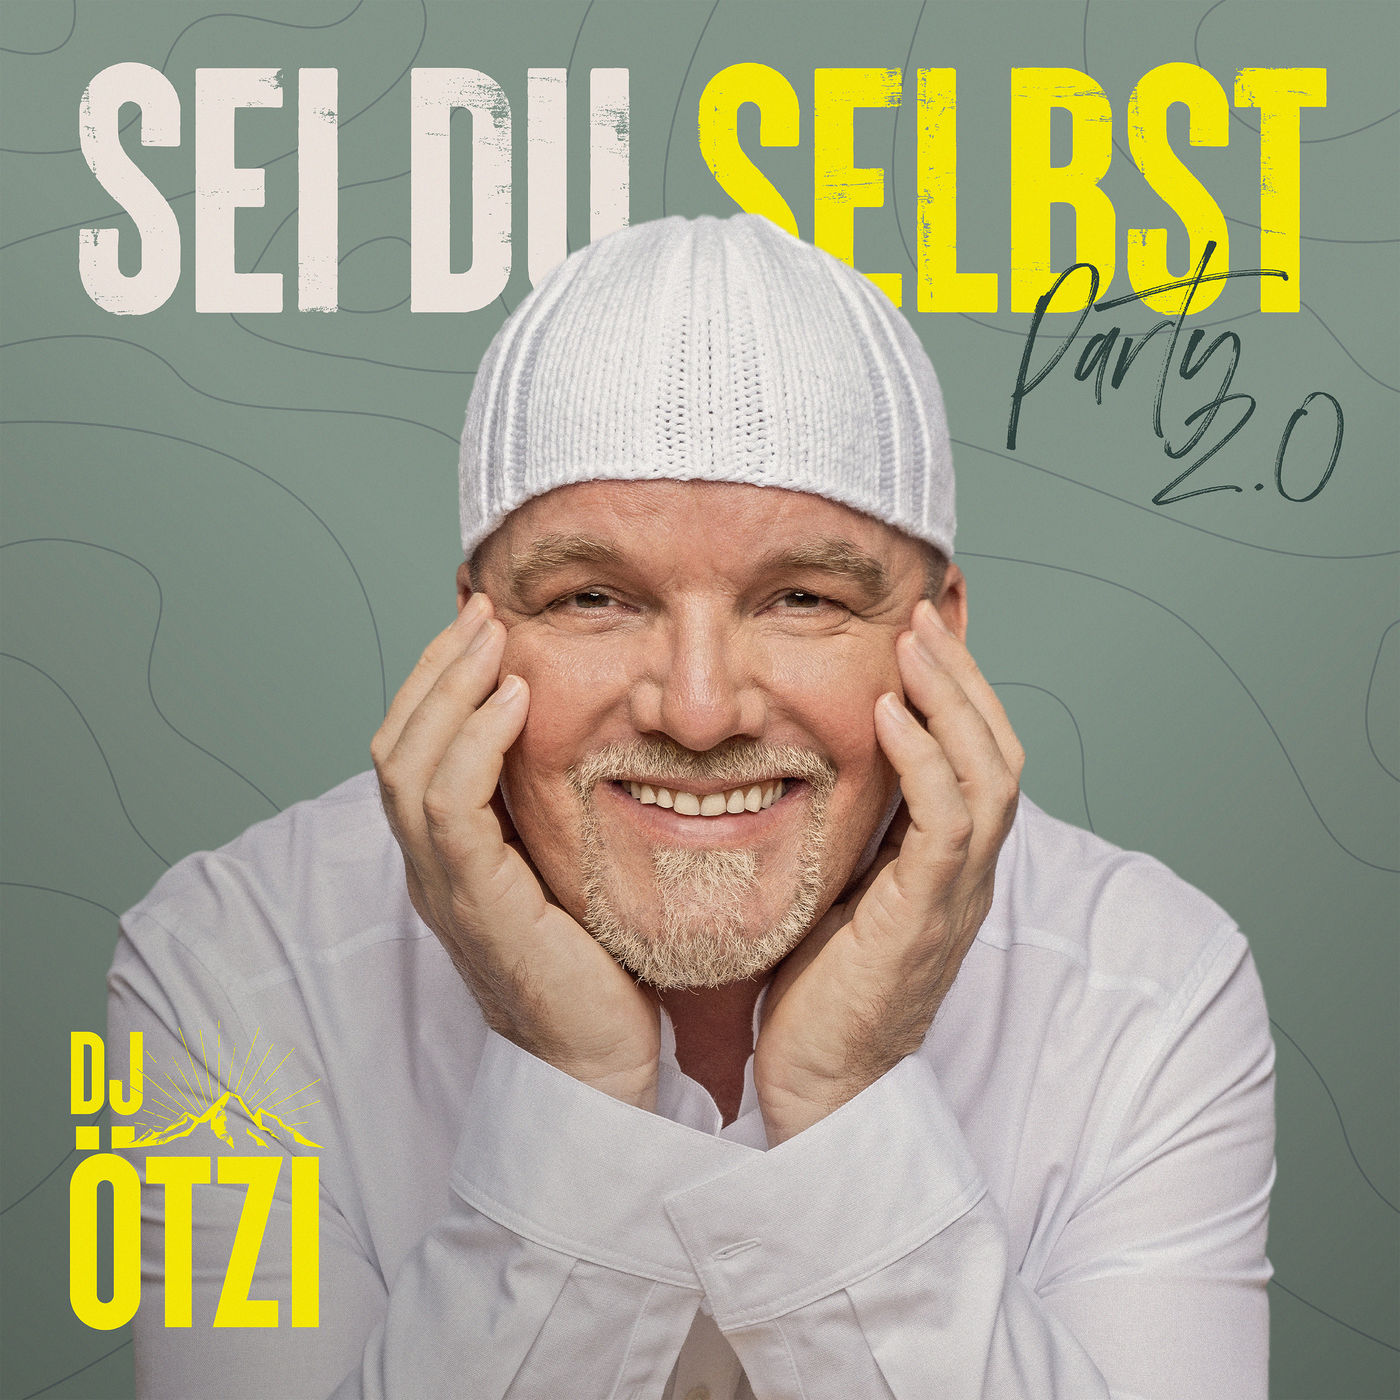 DJ Otzi - Sei du selbst - Party 2.0 (2021) [FLAC 24bit/44,1kHz]